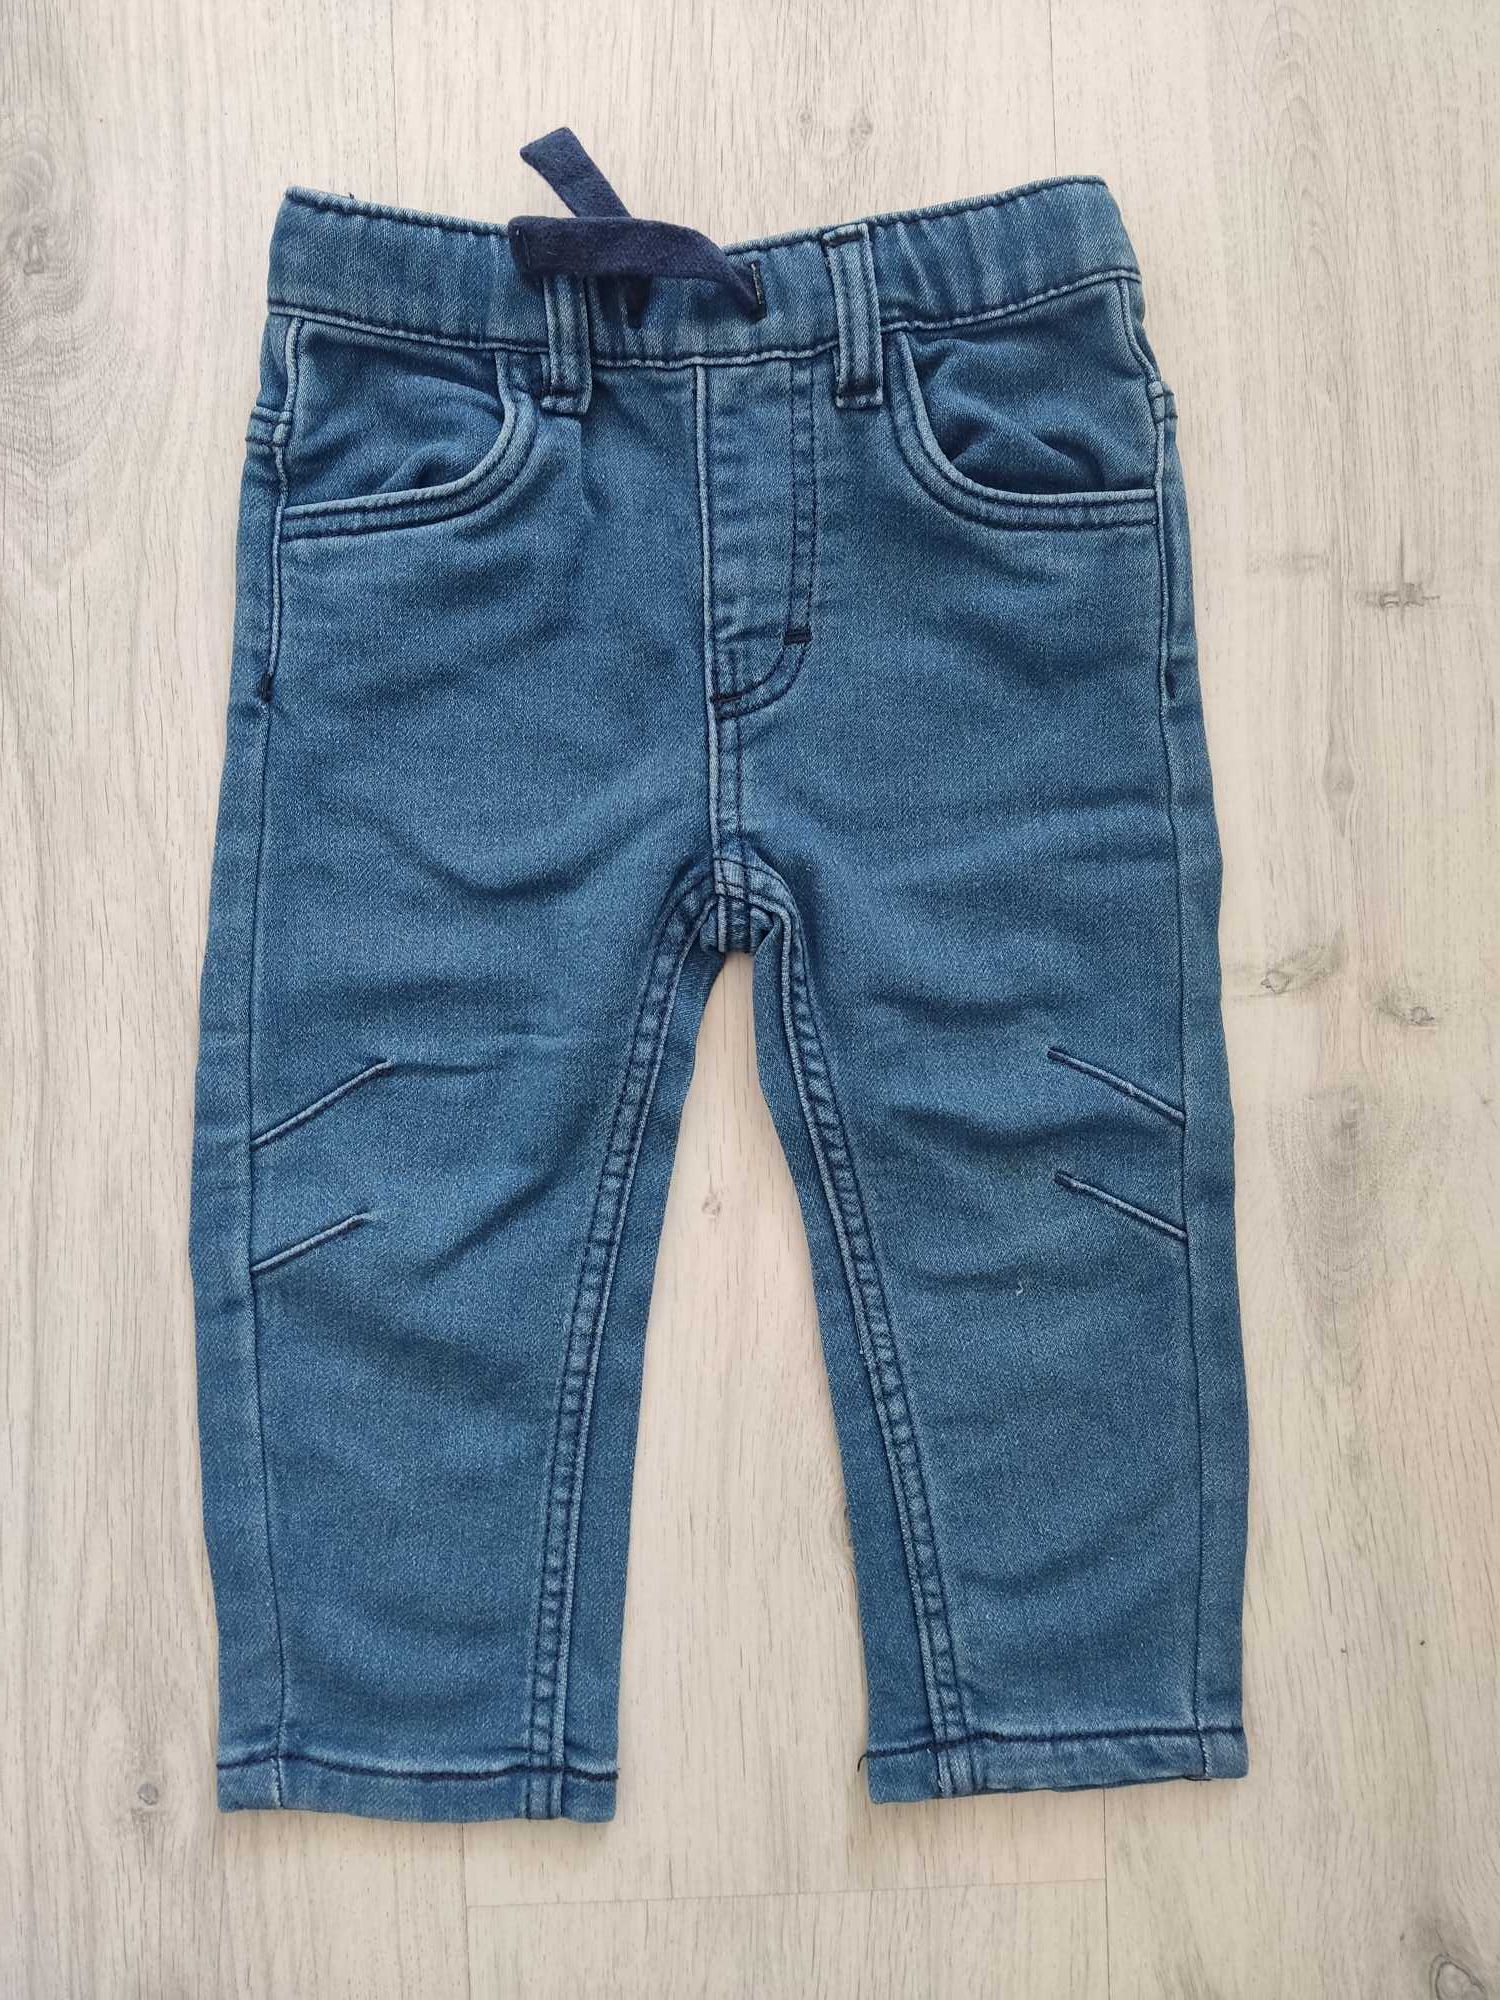 Spodnie jeansowe, Sinsay, r.86.